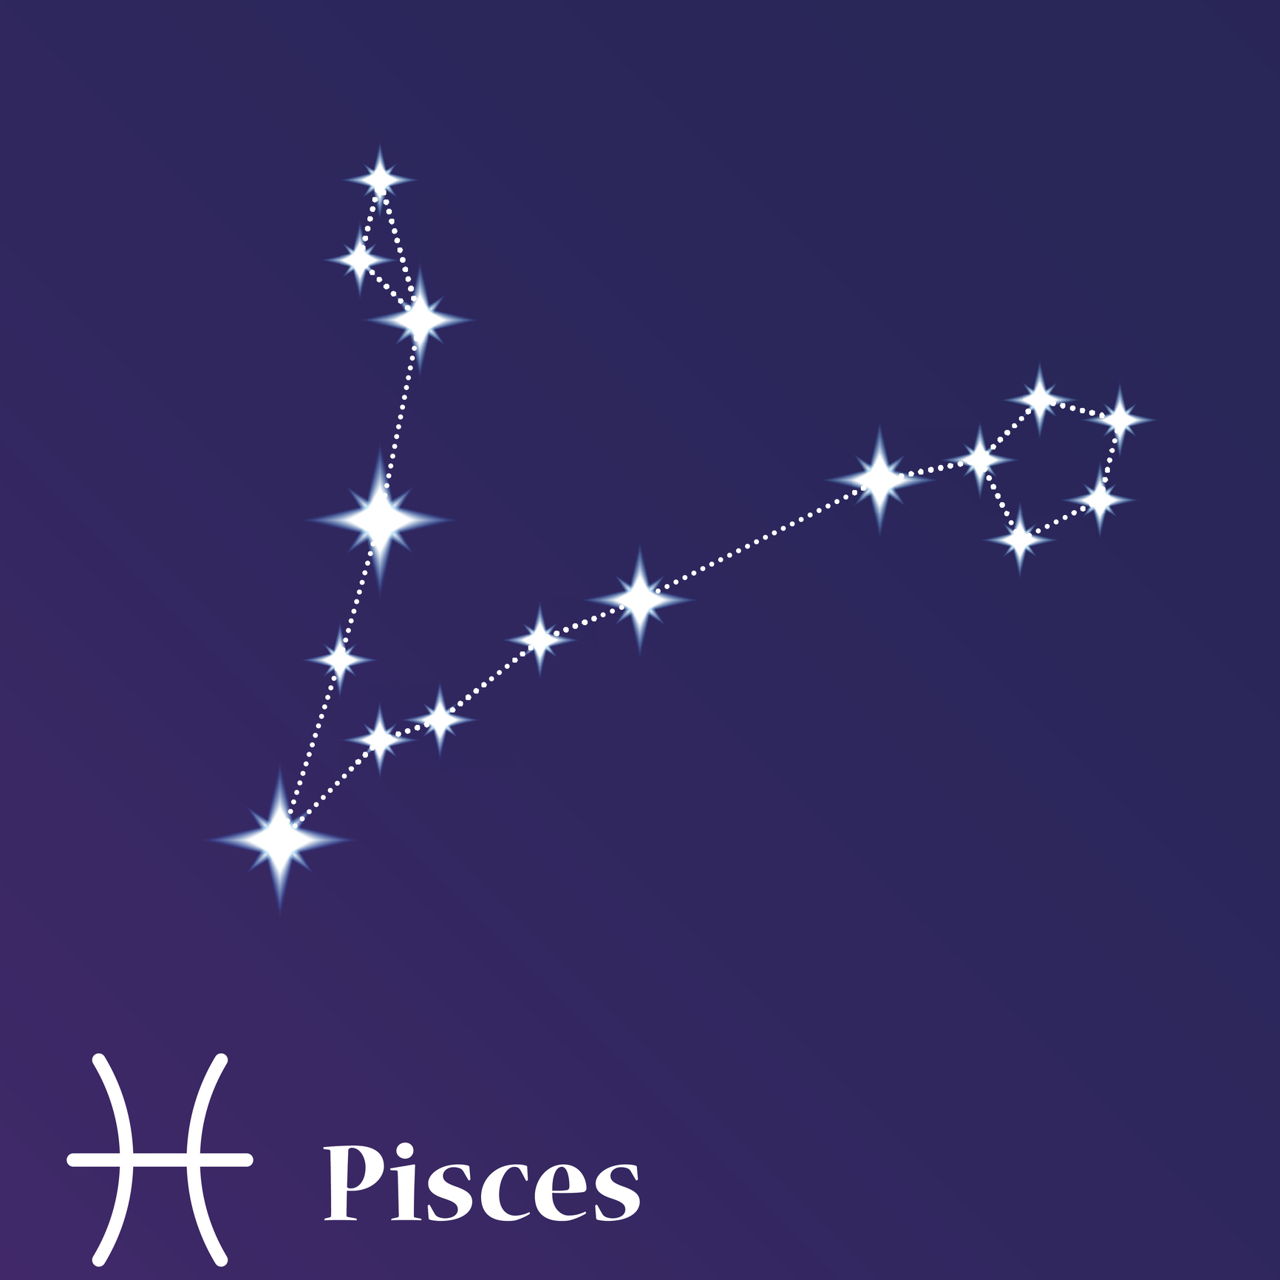 Созвездие фигурное. Астеризмы созвездия рыбы. Созвездие рыбы Pisces. Звезда Омикрон созвездия рыбы. Созвездие рыбы на Звездном небе.